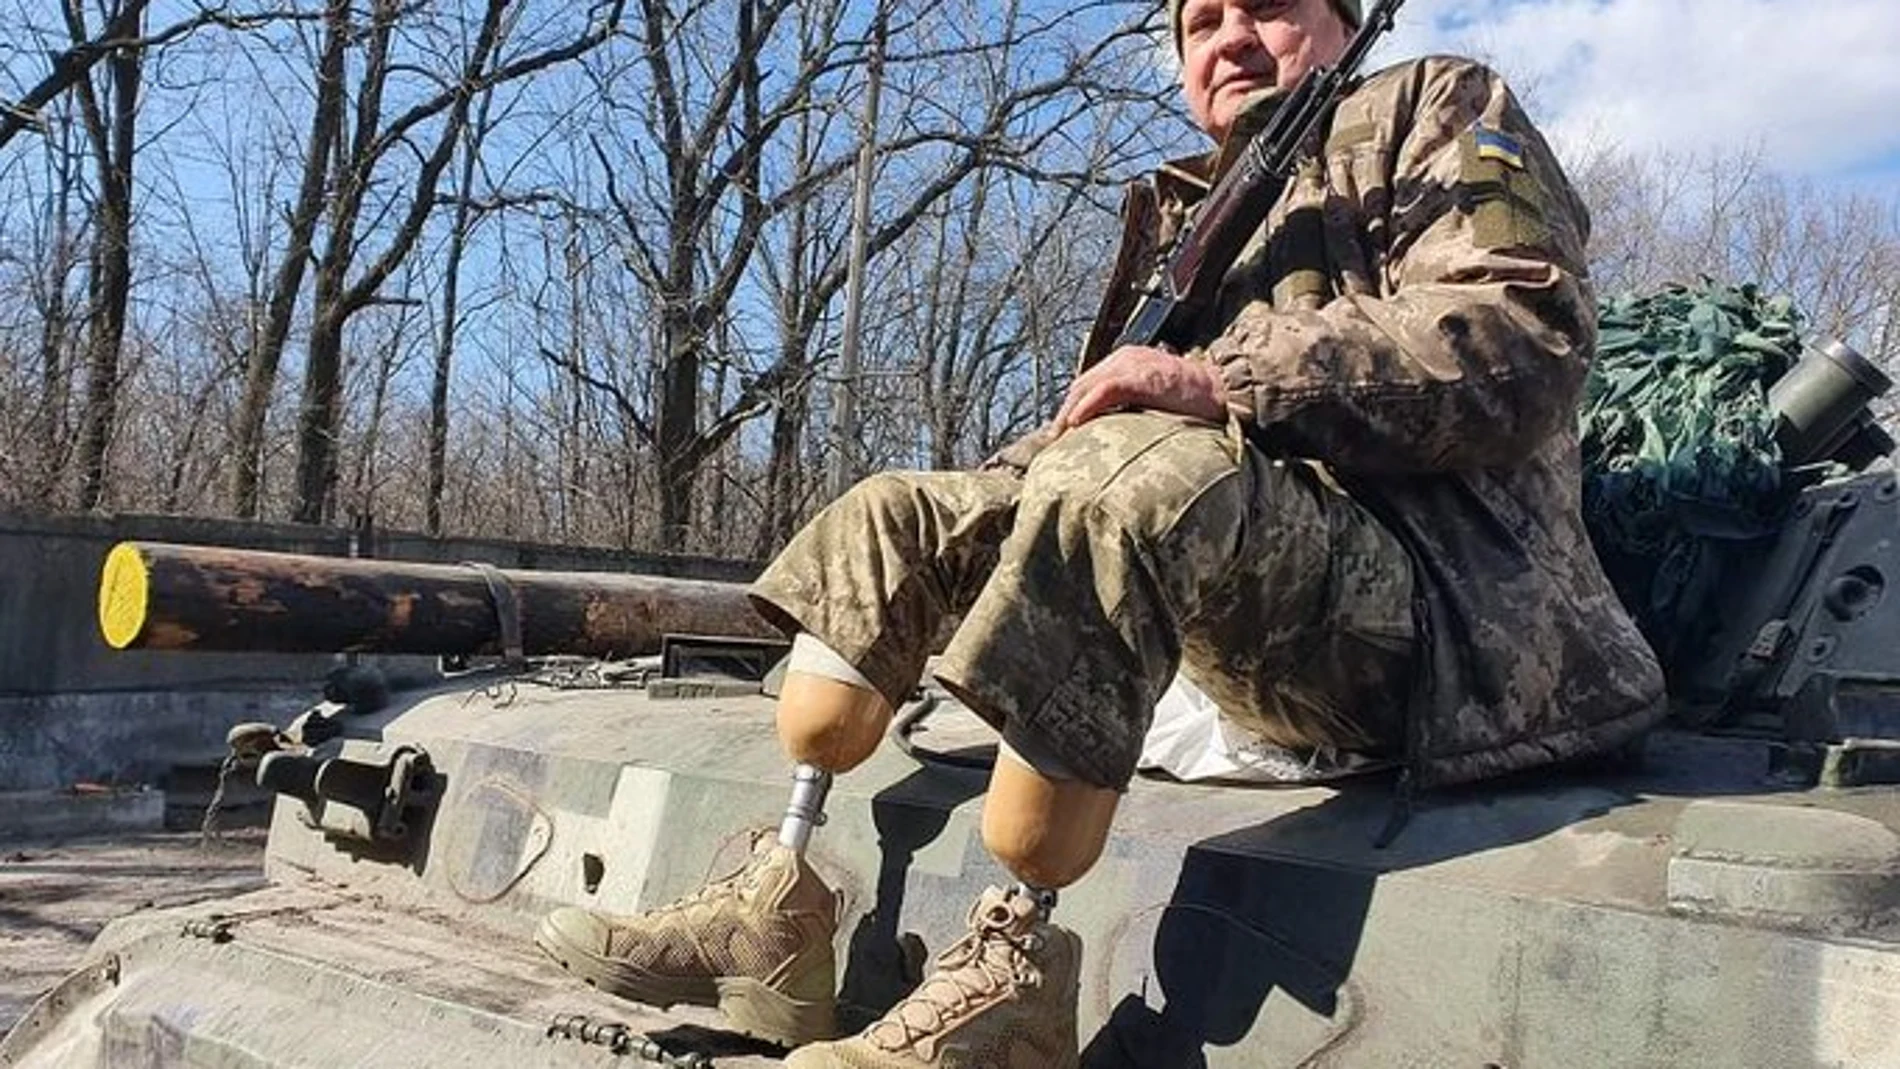 Vasyl afirma que anteriormente, había servido al ejército ucraniano y puede “disparar, conducir bien”